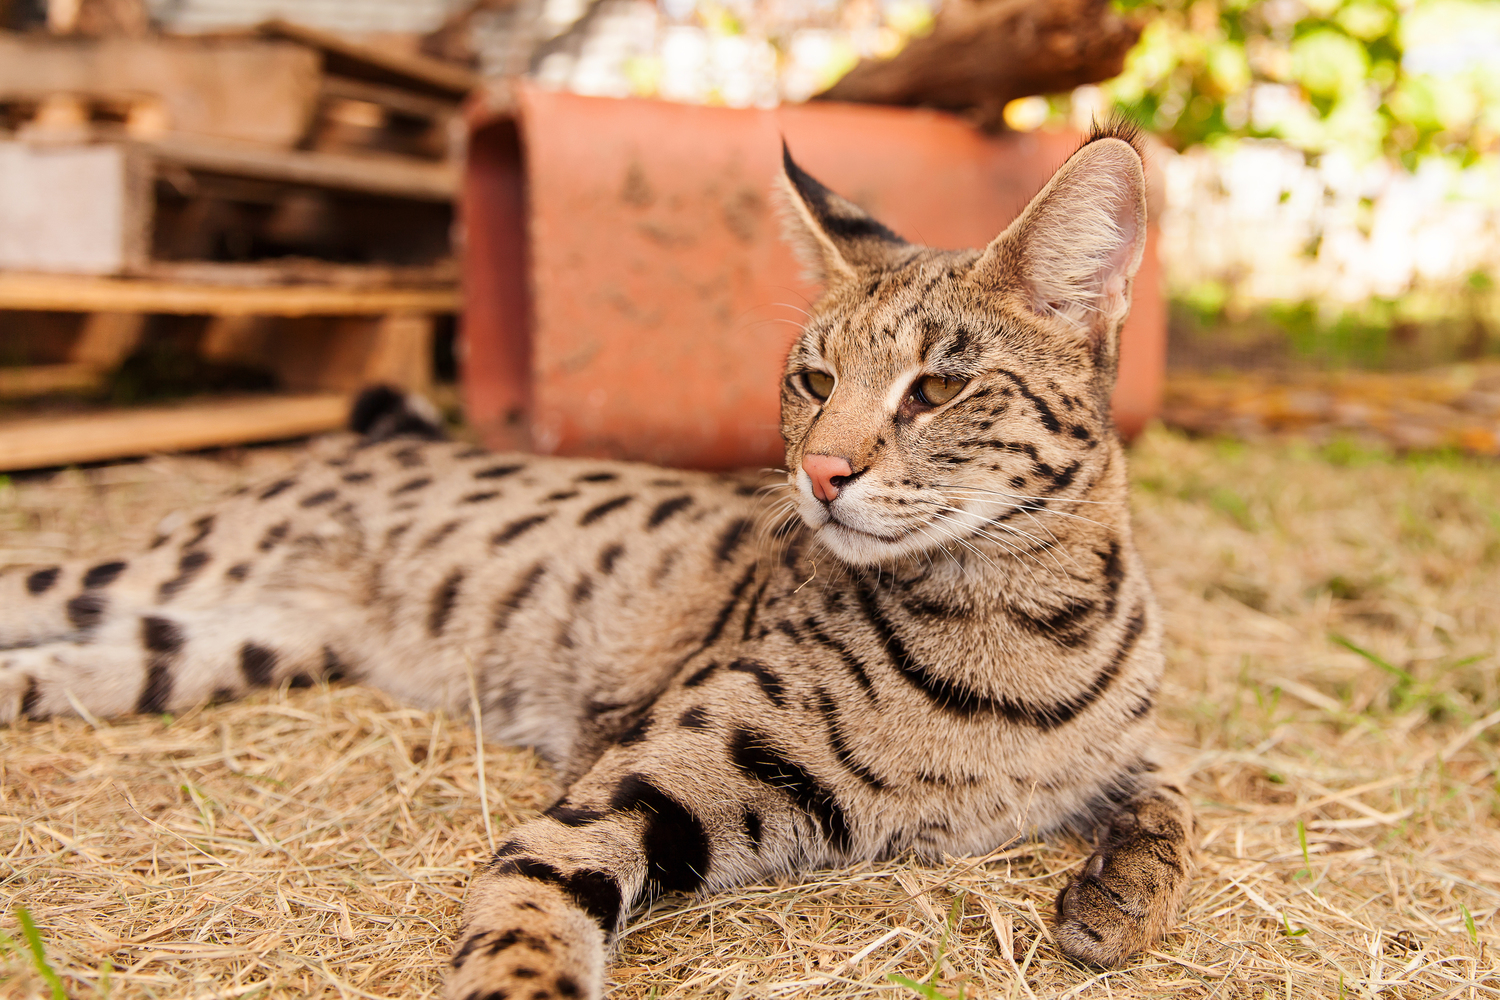 Is a Savannah cat a good pet?